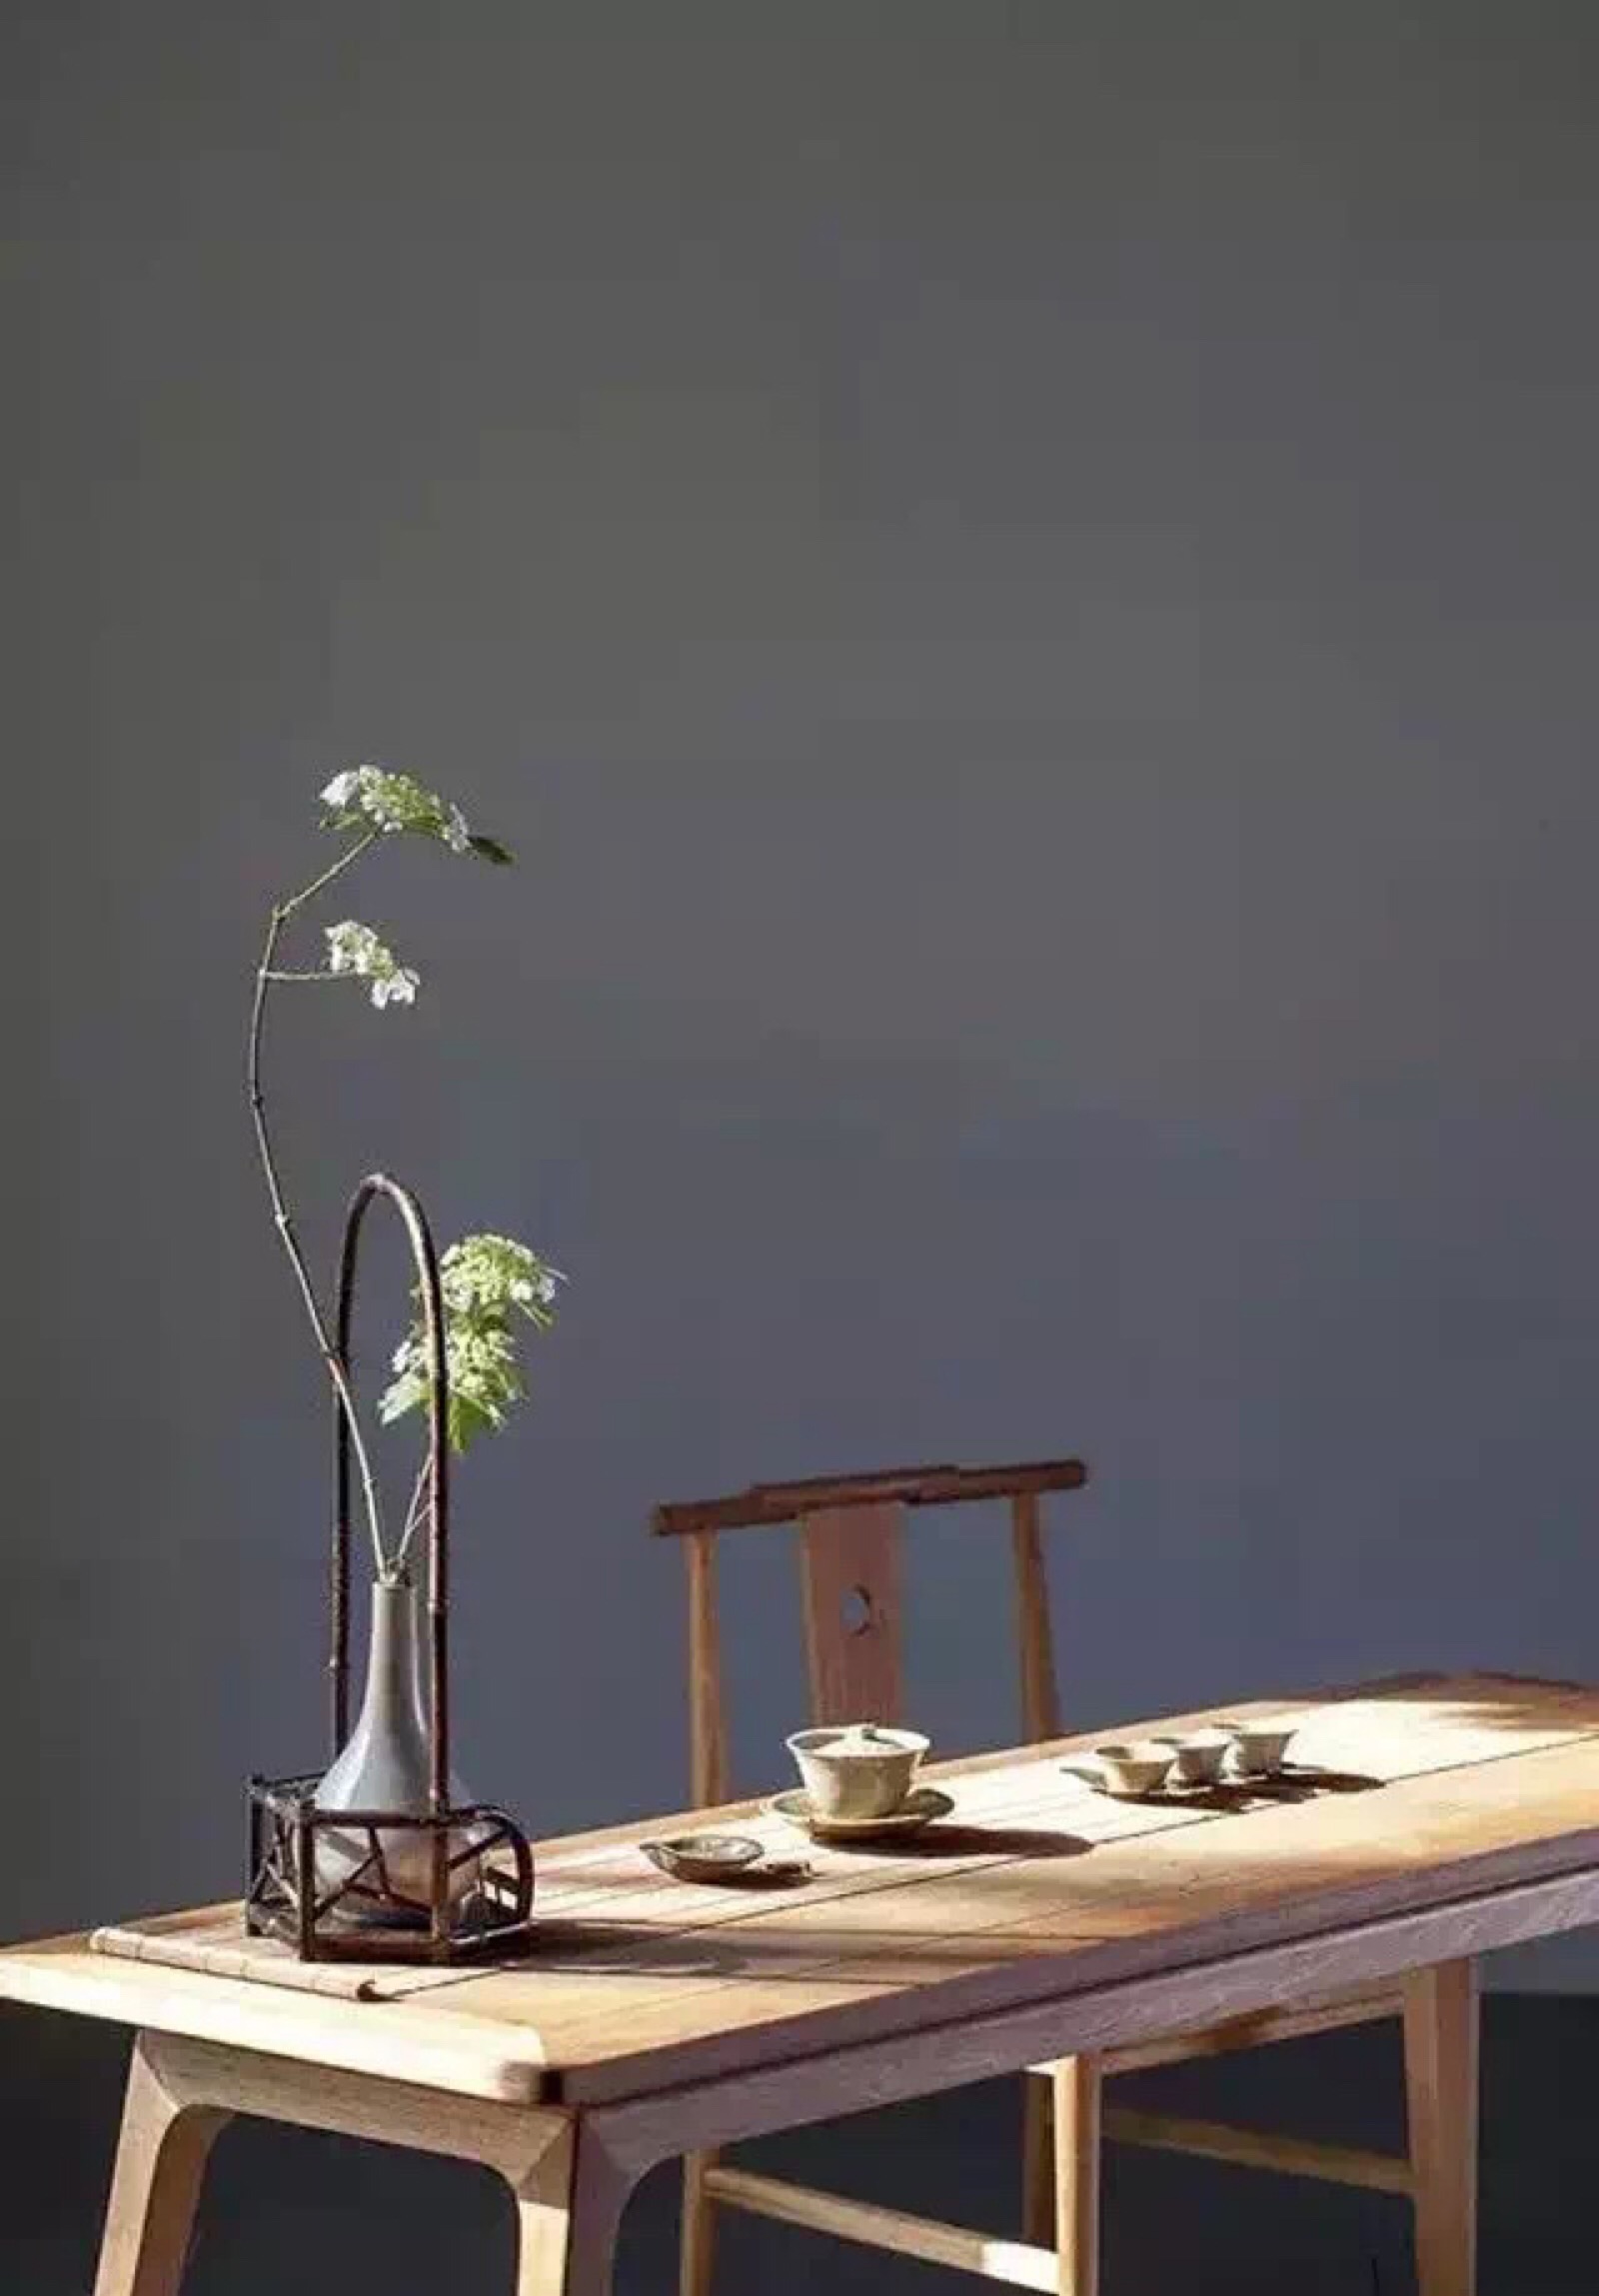 茶道中的插花艺术,能够古朴优雅地衬托出茶人素养与禅意,而有别于日本